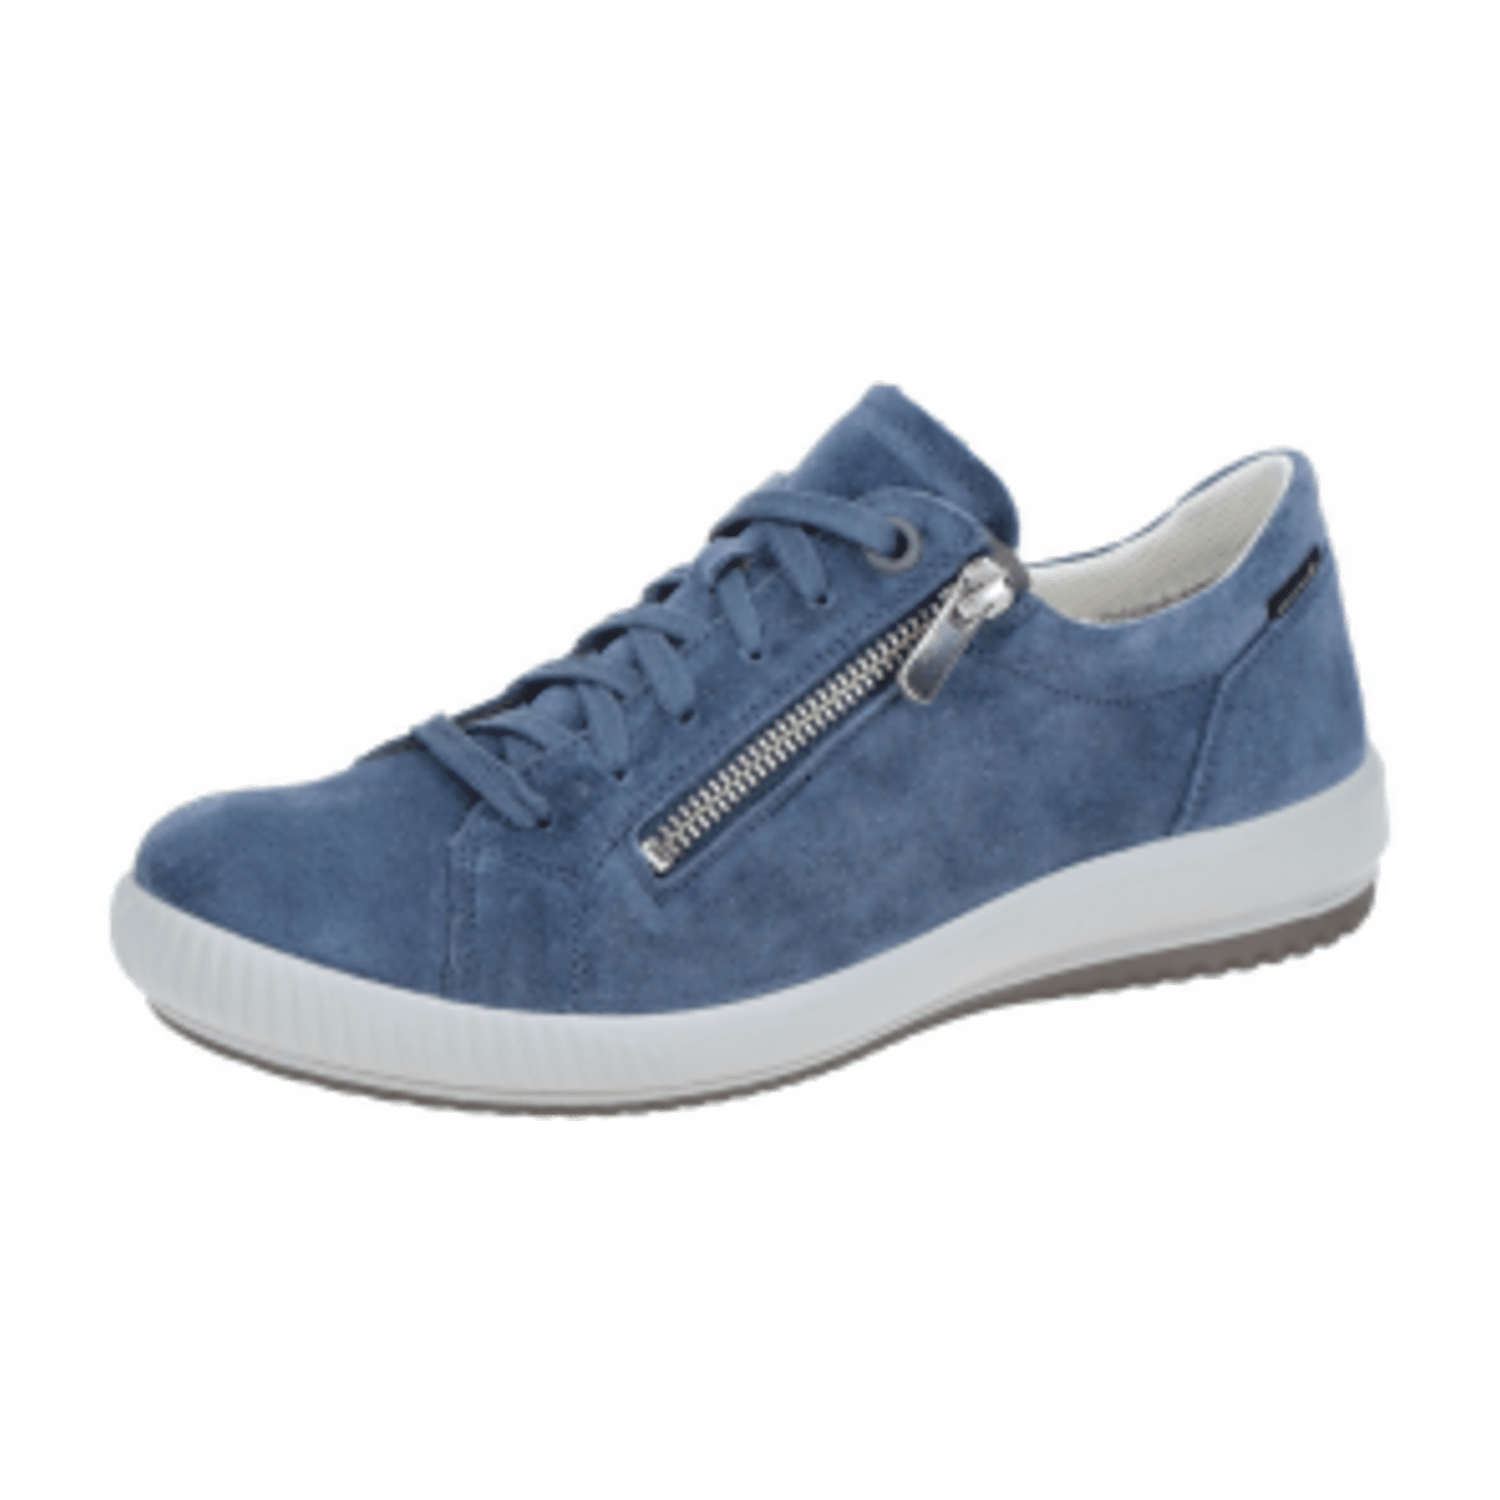 Legero Tanaro 5 Schuhe blau GORE-TEX 219